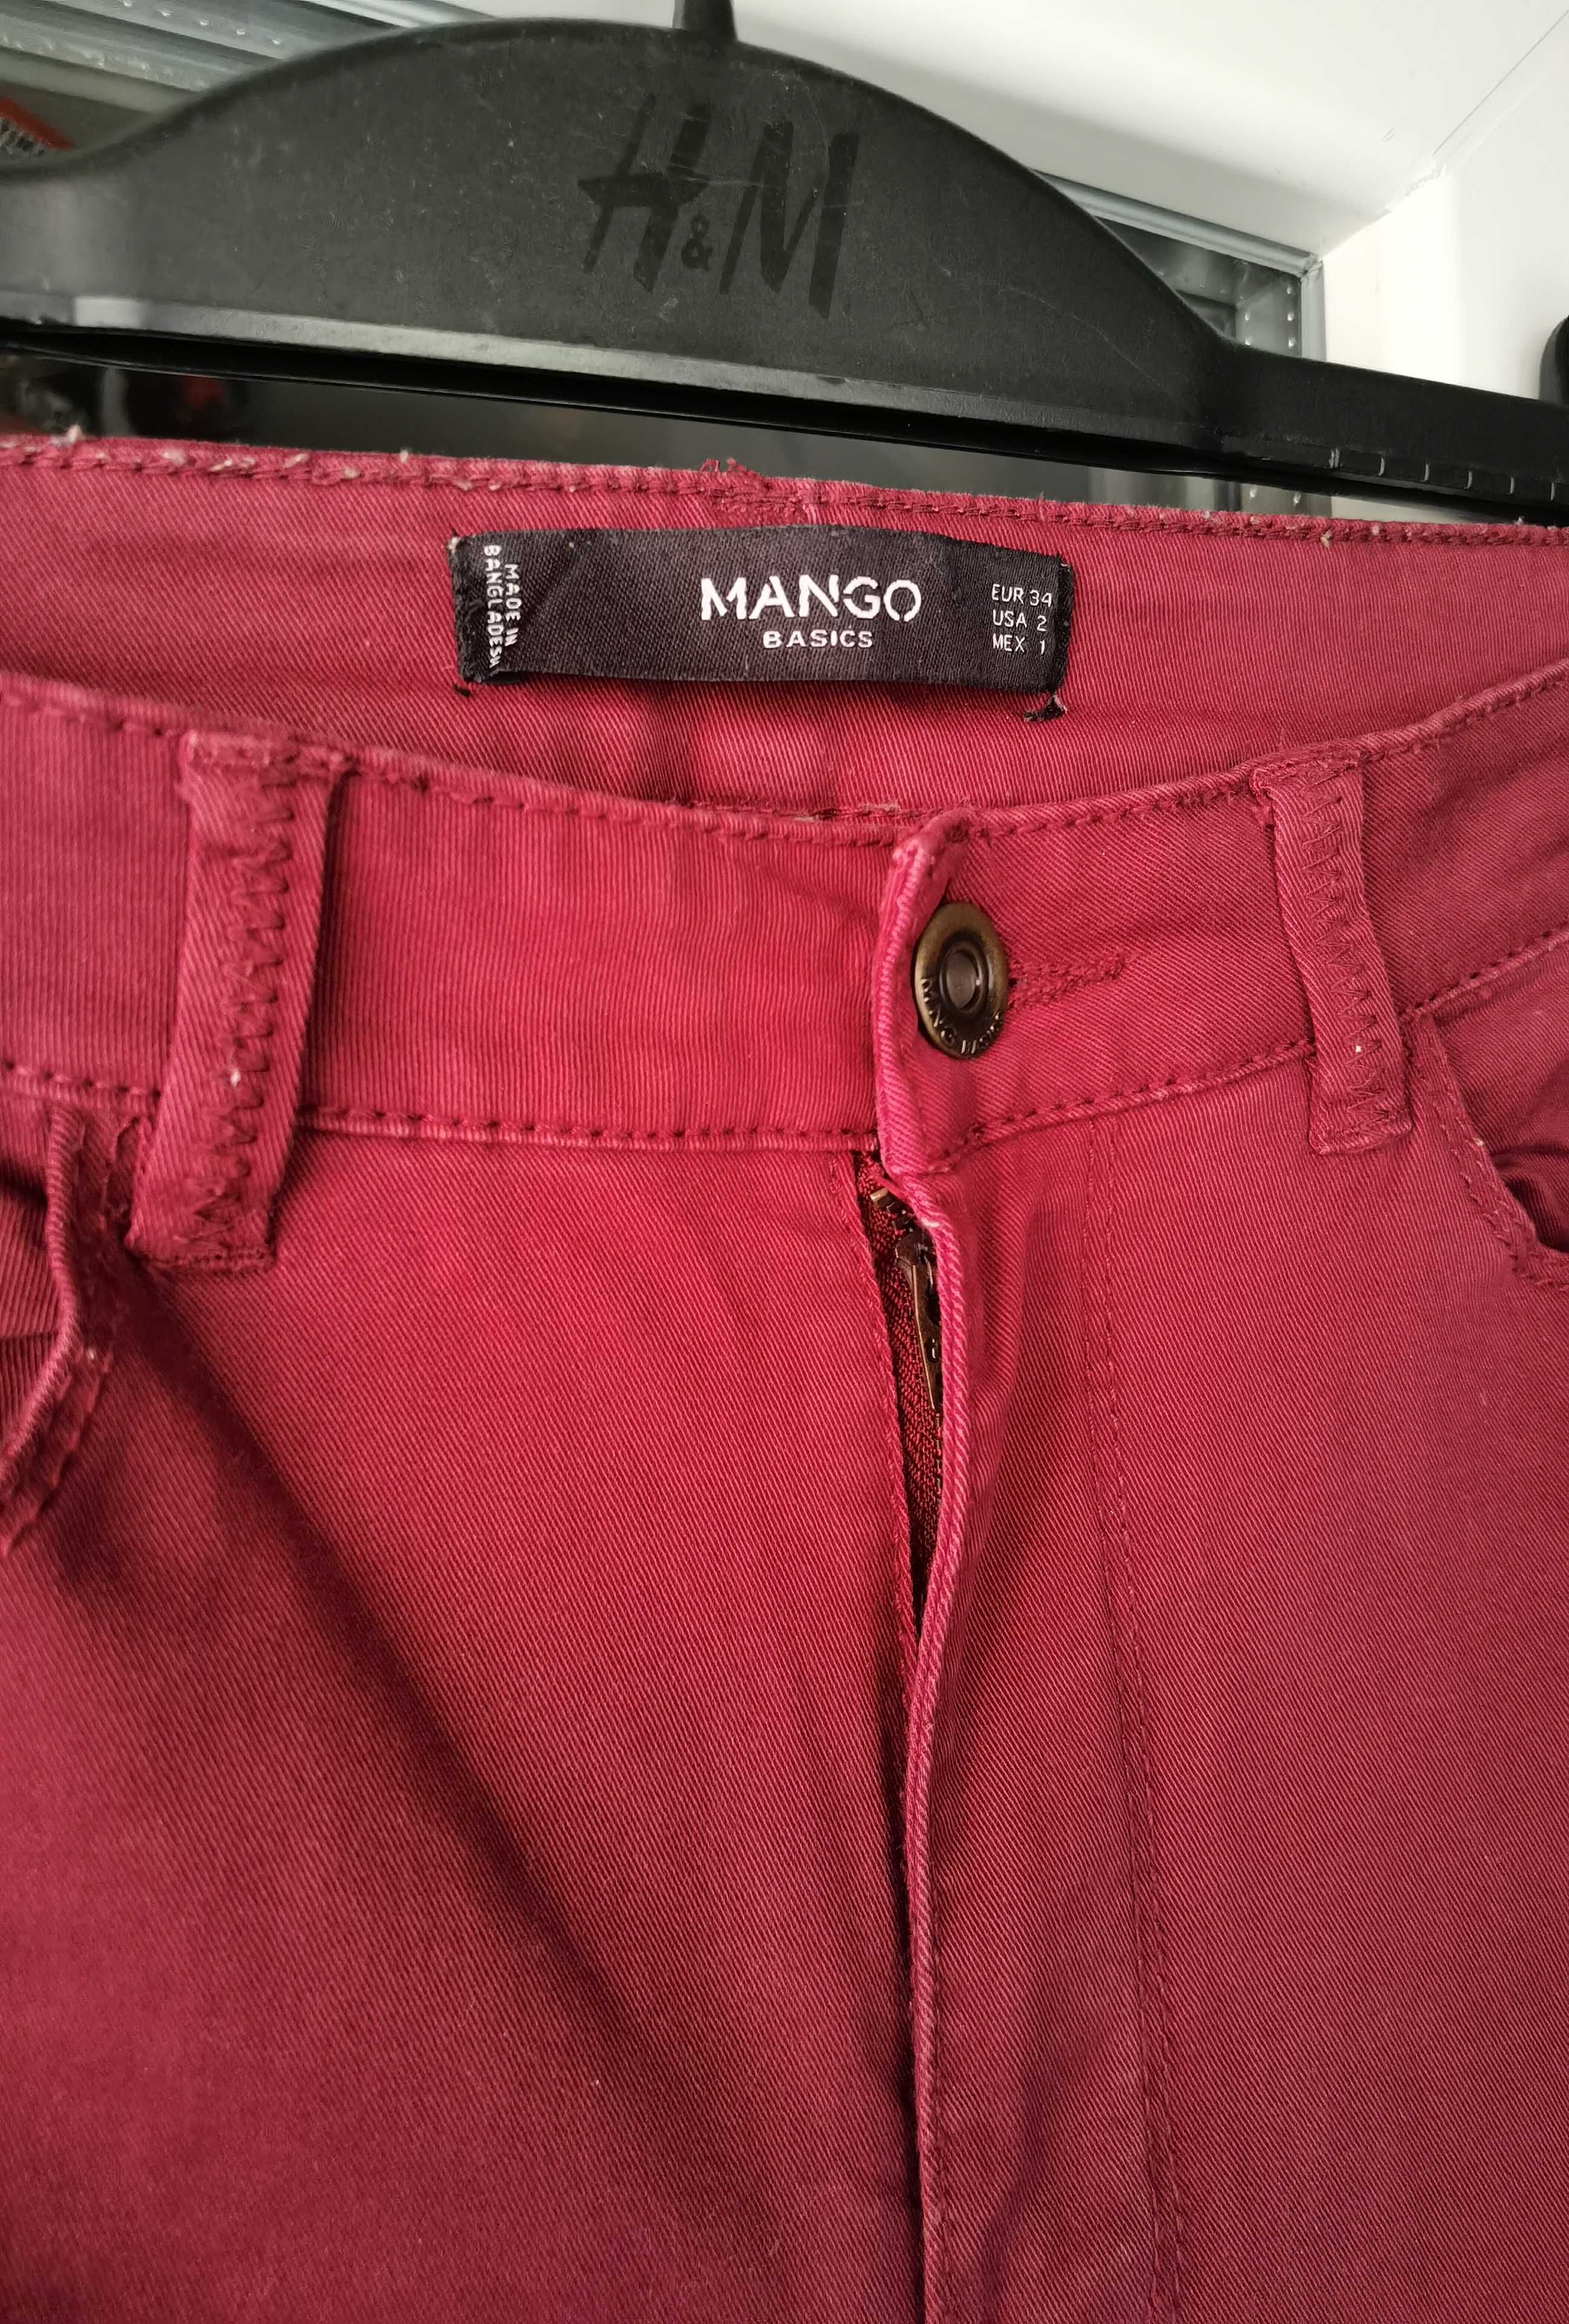 Pantaloni tip blug Mango 2 buc, mărimea 34/XS, culoarea grena și kaki